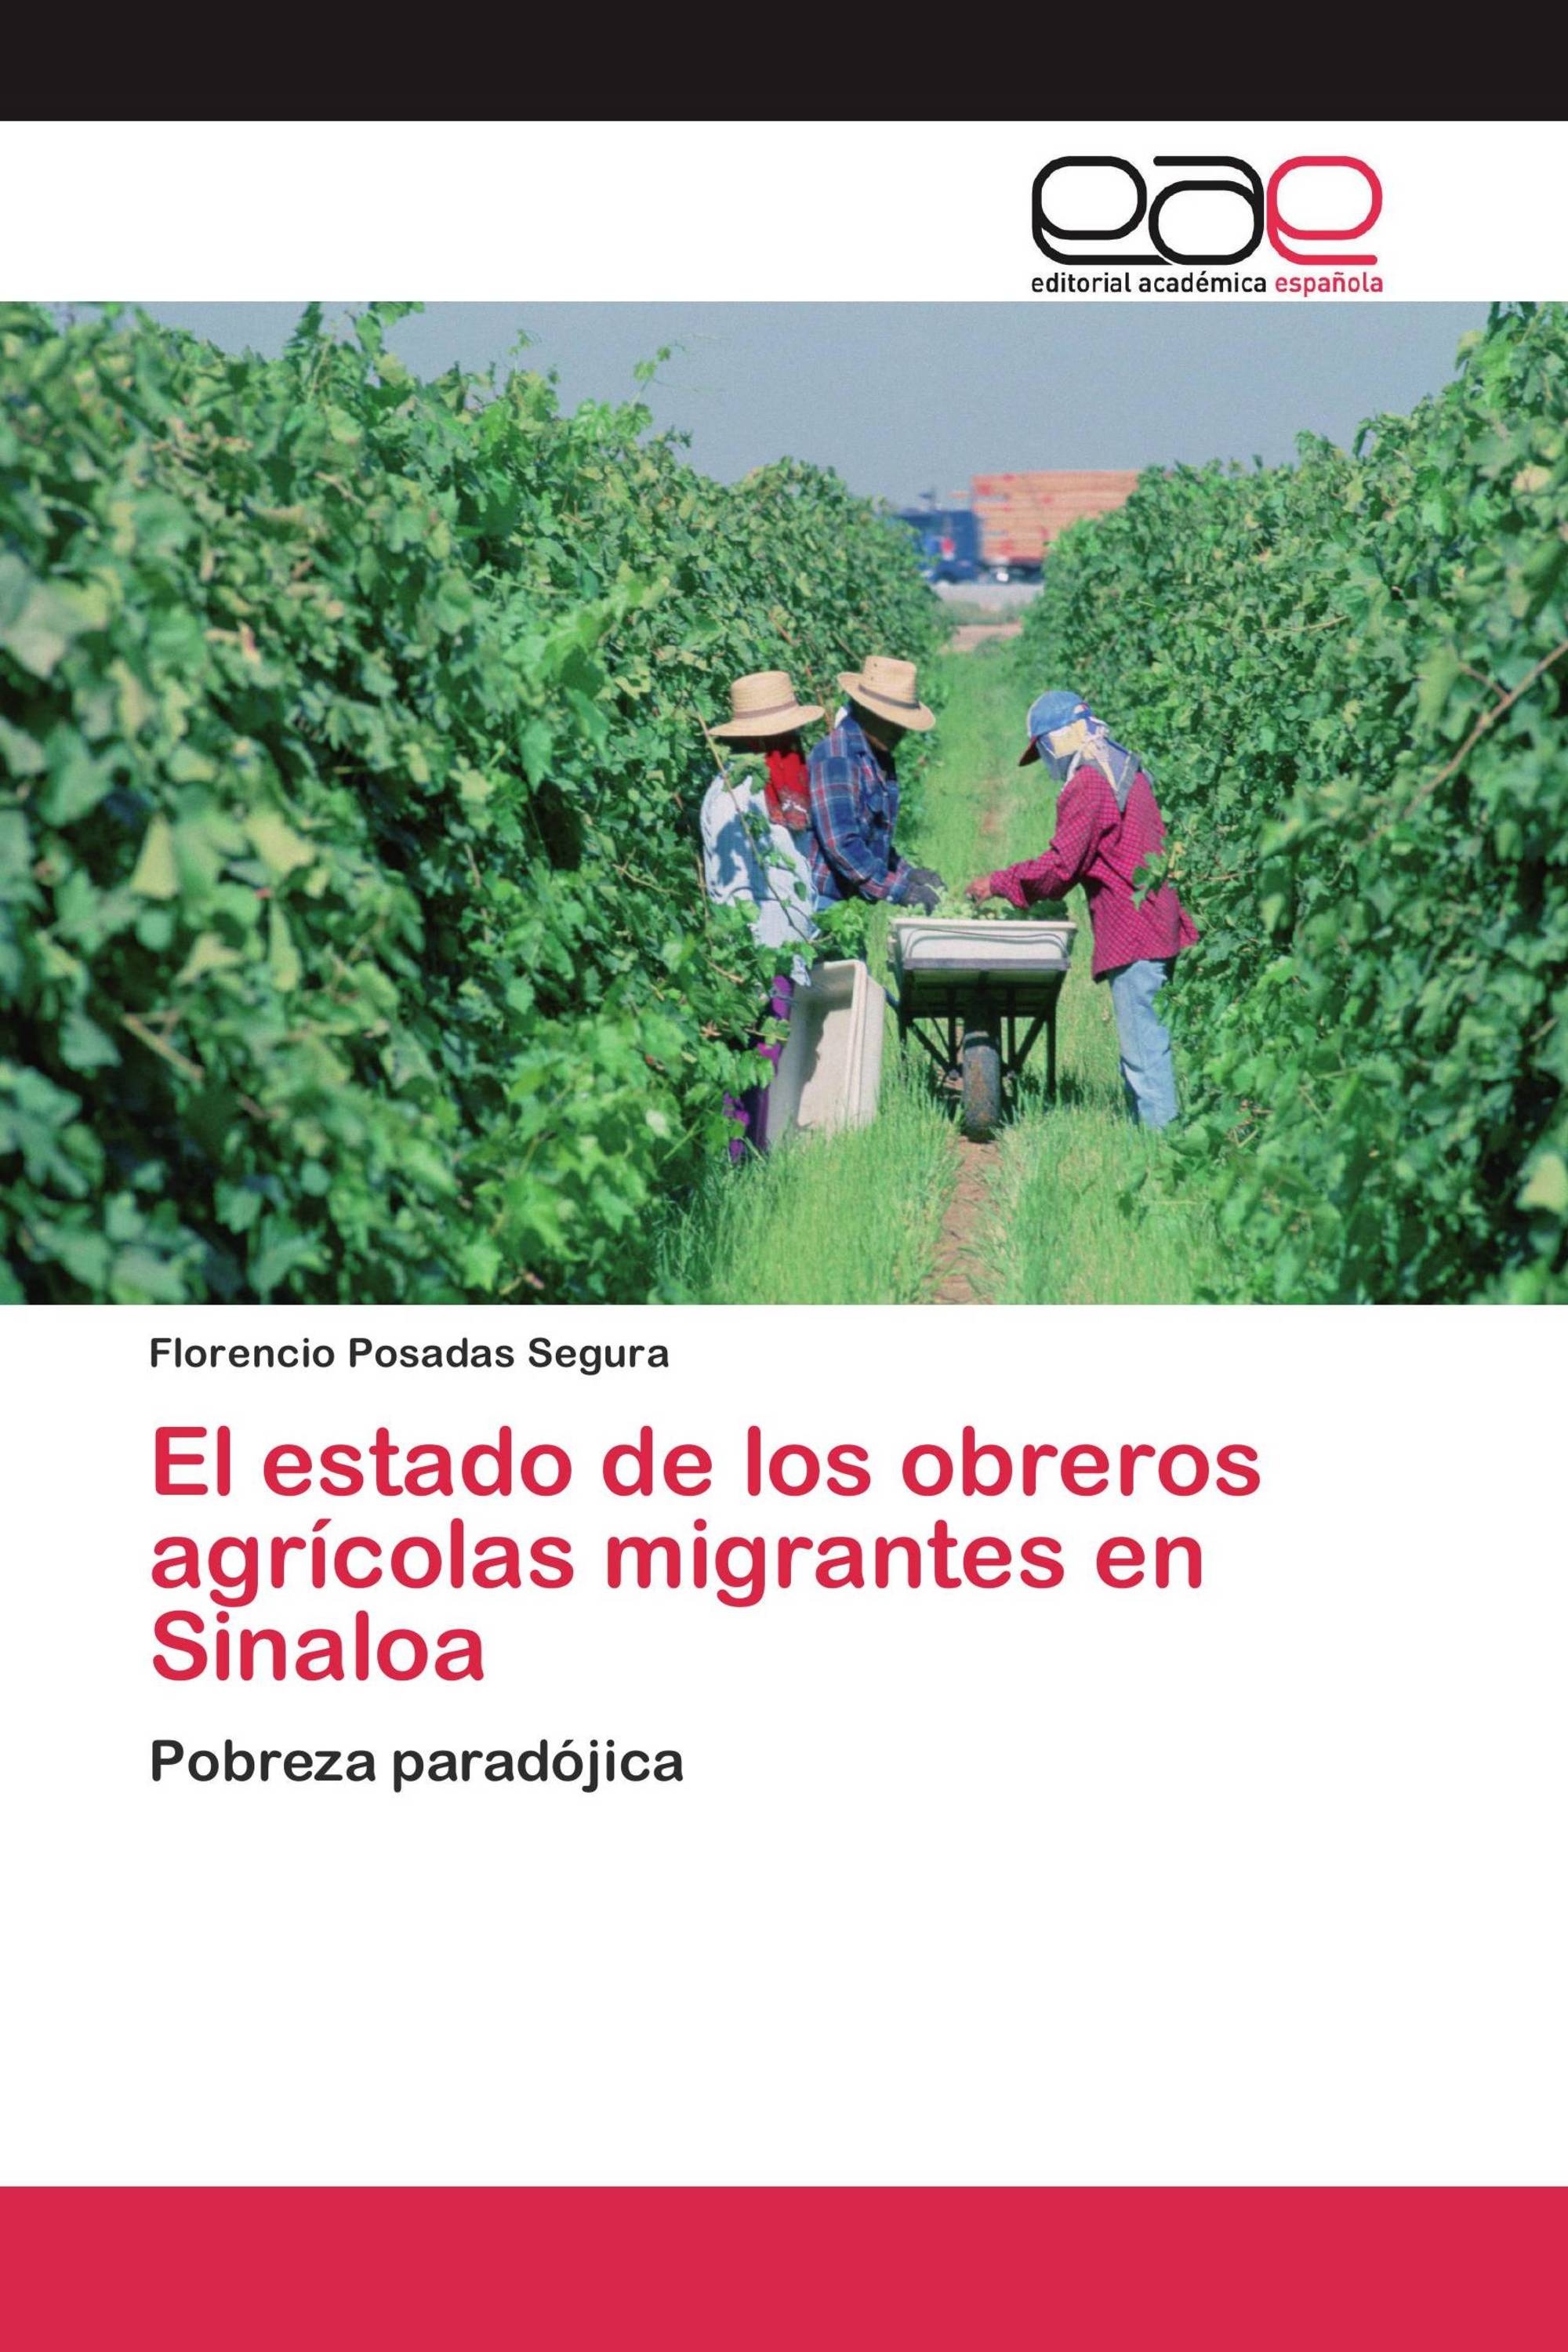 El estado de los obreros agrícolas migrantes en Sinaloa